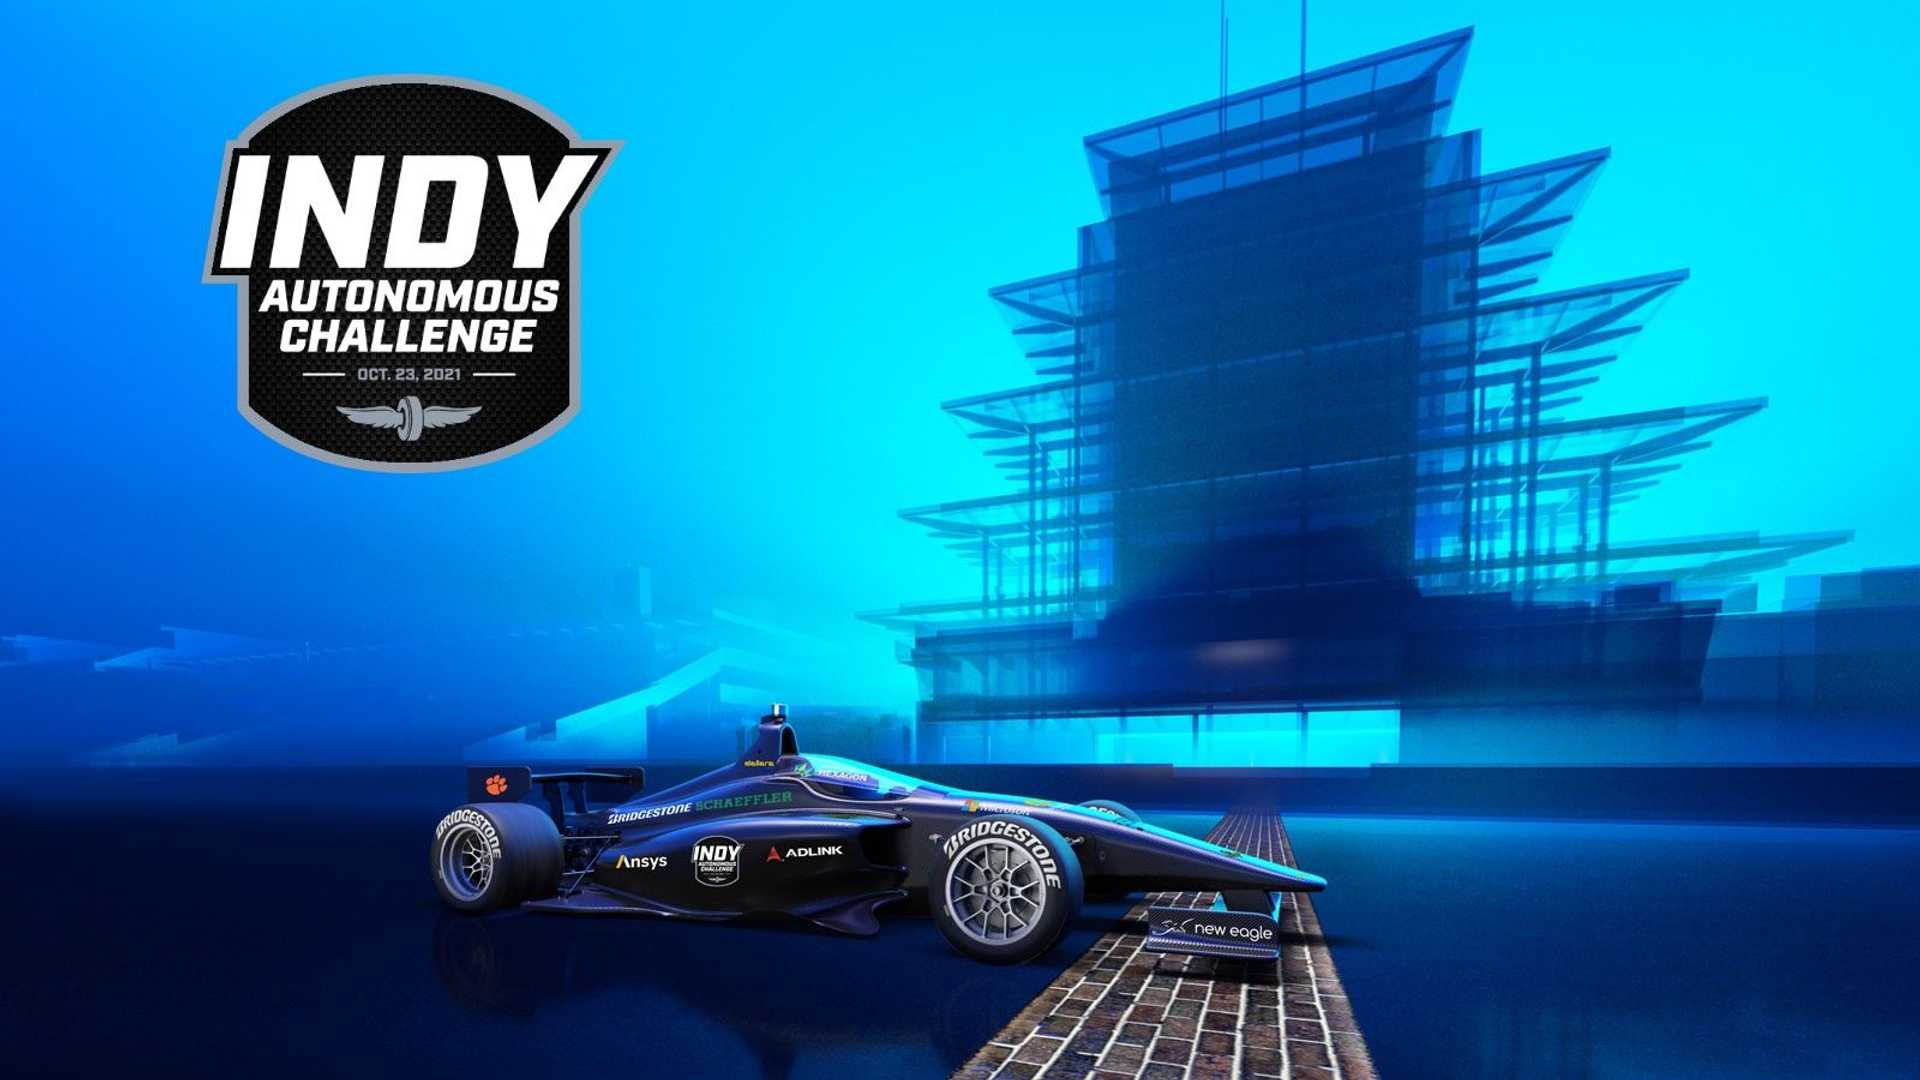 نمای جانبی خودرو خودران ایندی کار / IndyCar Autonomous Series در پیست ایندیاناپولیس با زمینه آبی